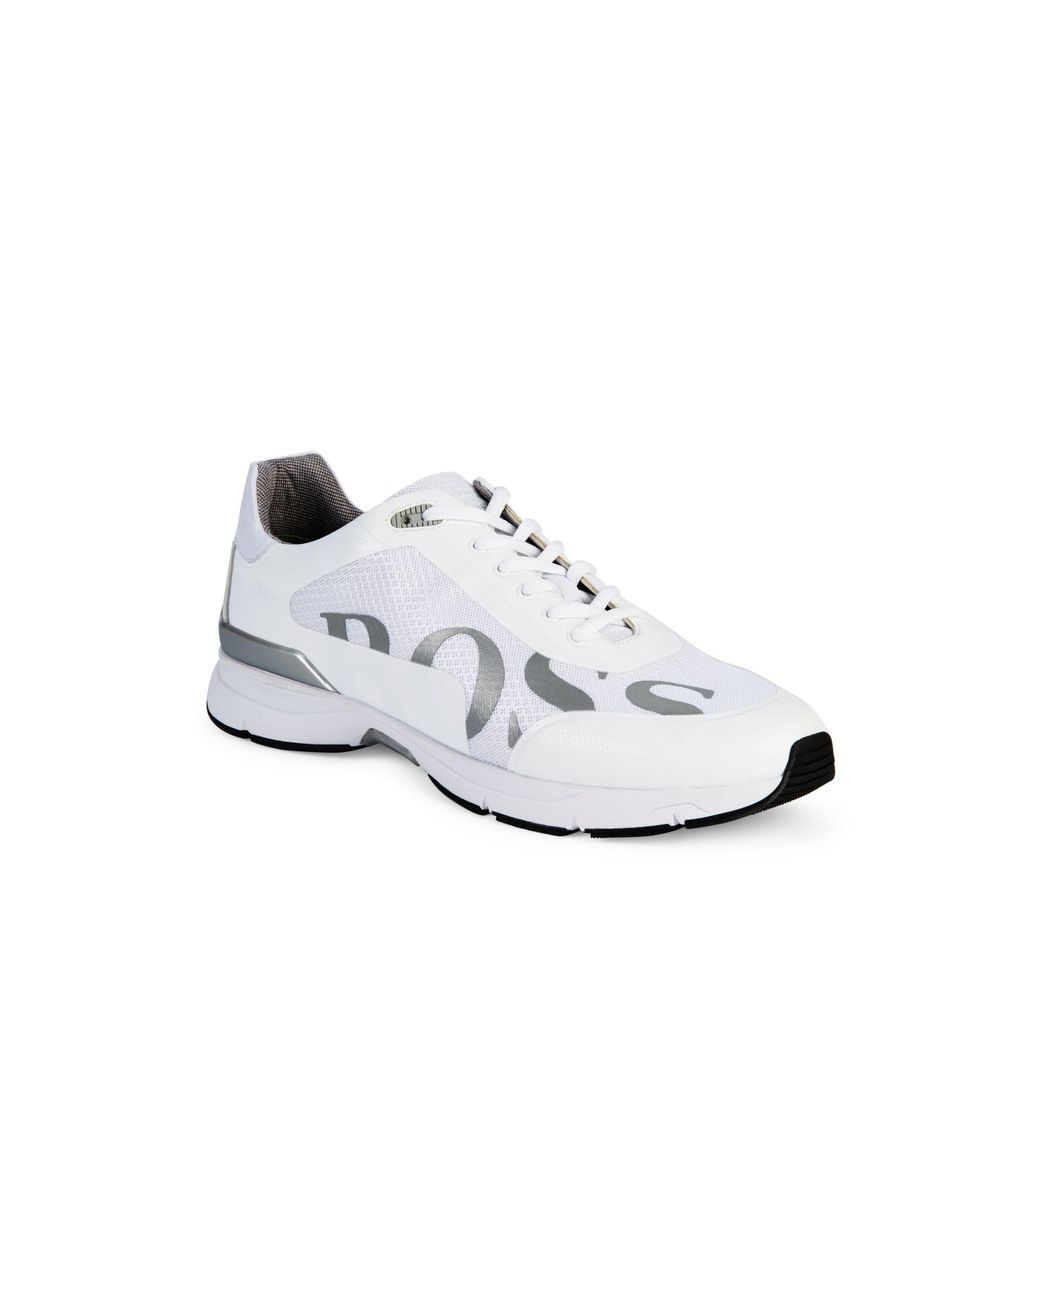 BOSS by HUGO BOSS Velocity Running Sneakers in White Men | Lyst